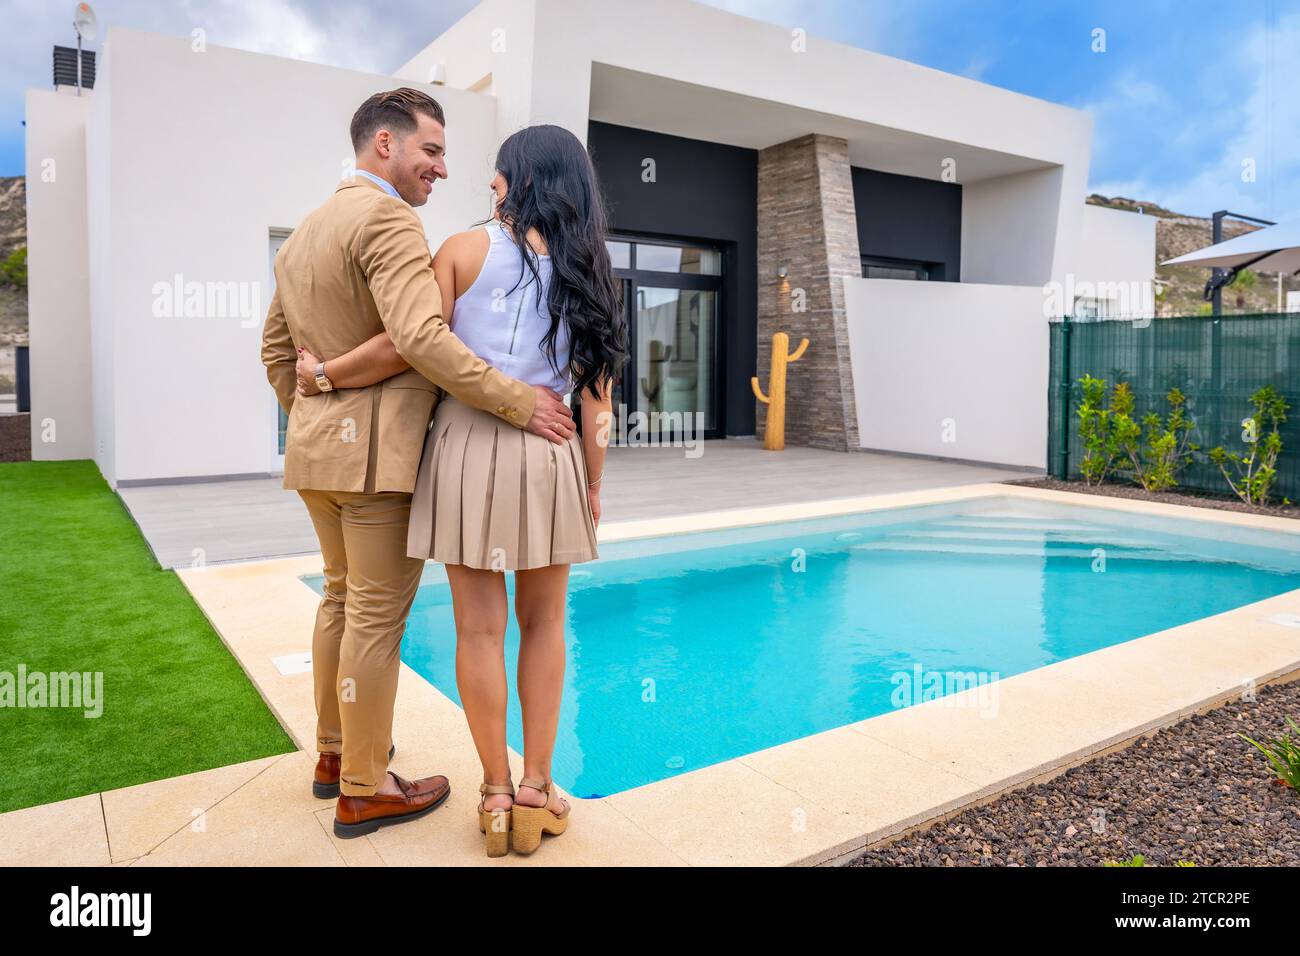 Vue arrière d'un fier couple contemplant leur maison nouvellement achetée Banque D'Images